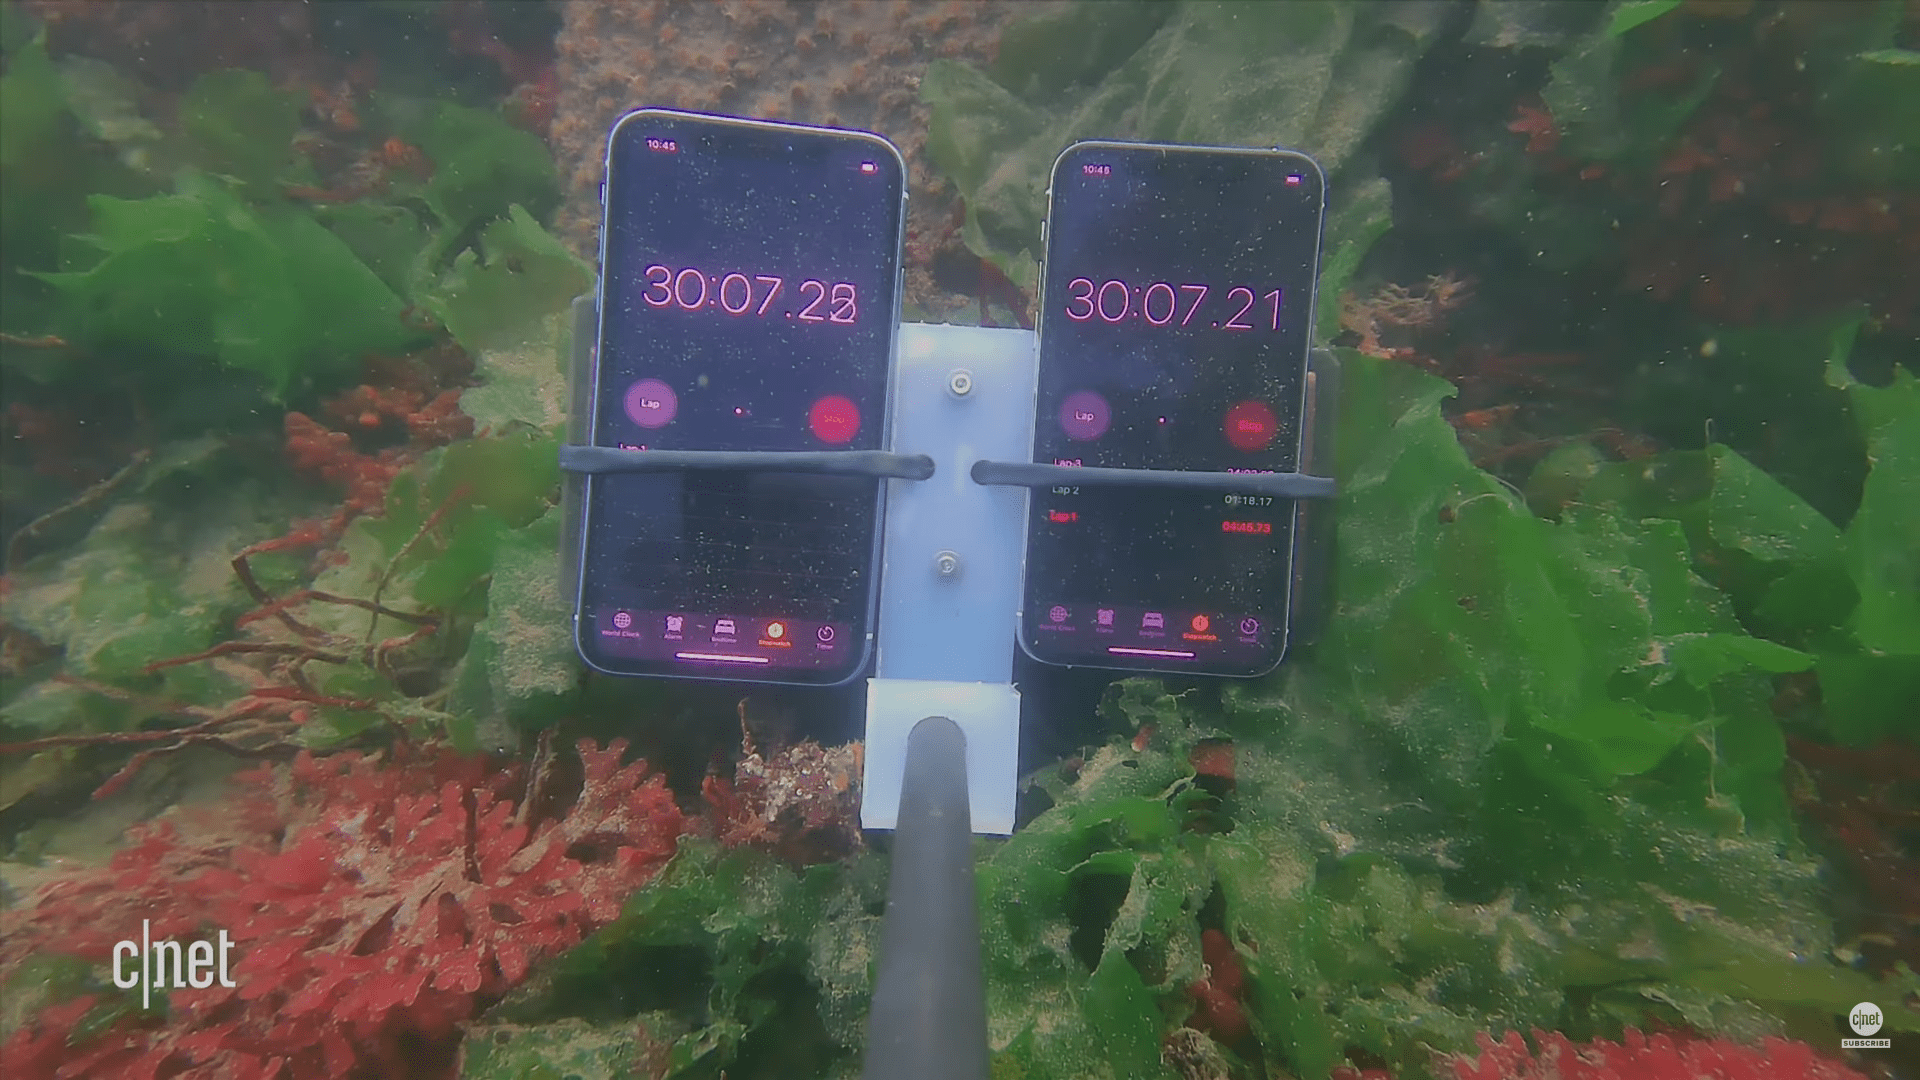 Thử nghiệm lặn sâu iPhone 11 và iPhone 11 Pro: 12 mét vẫn không xi nhê!